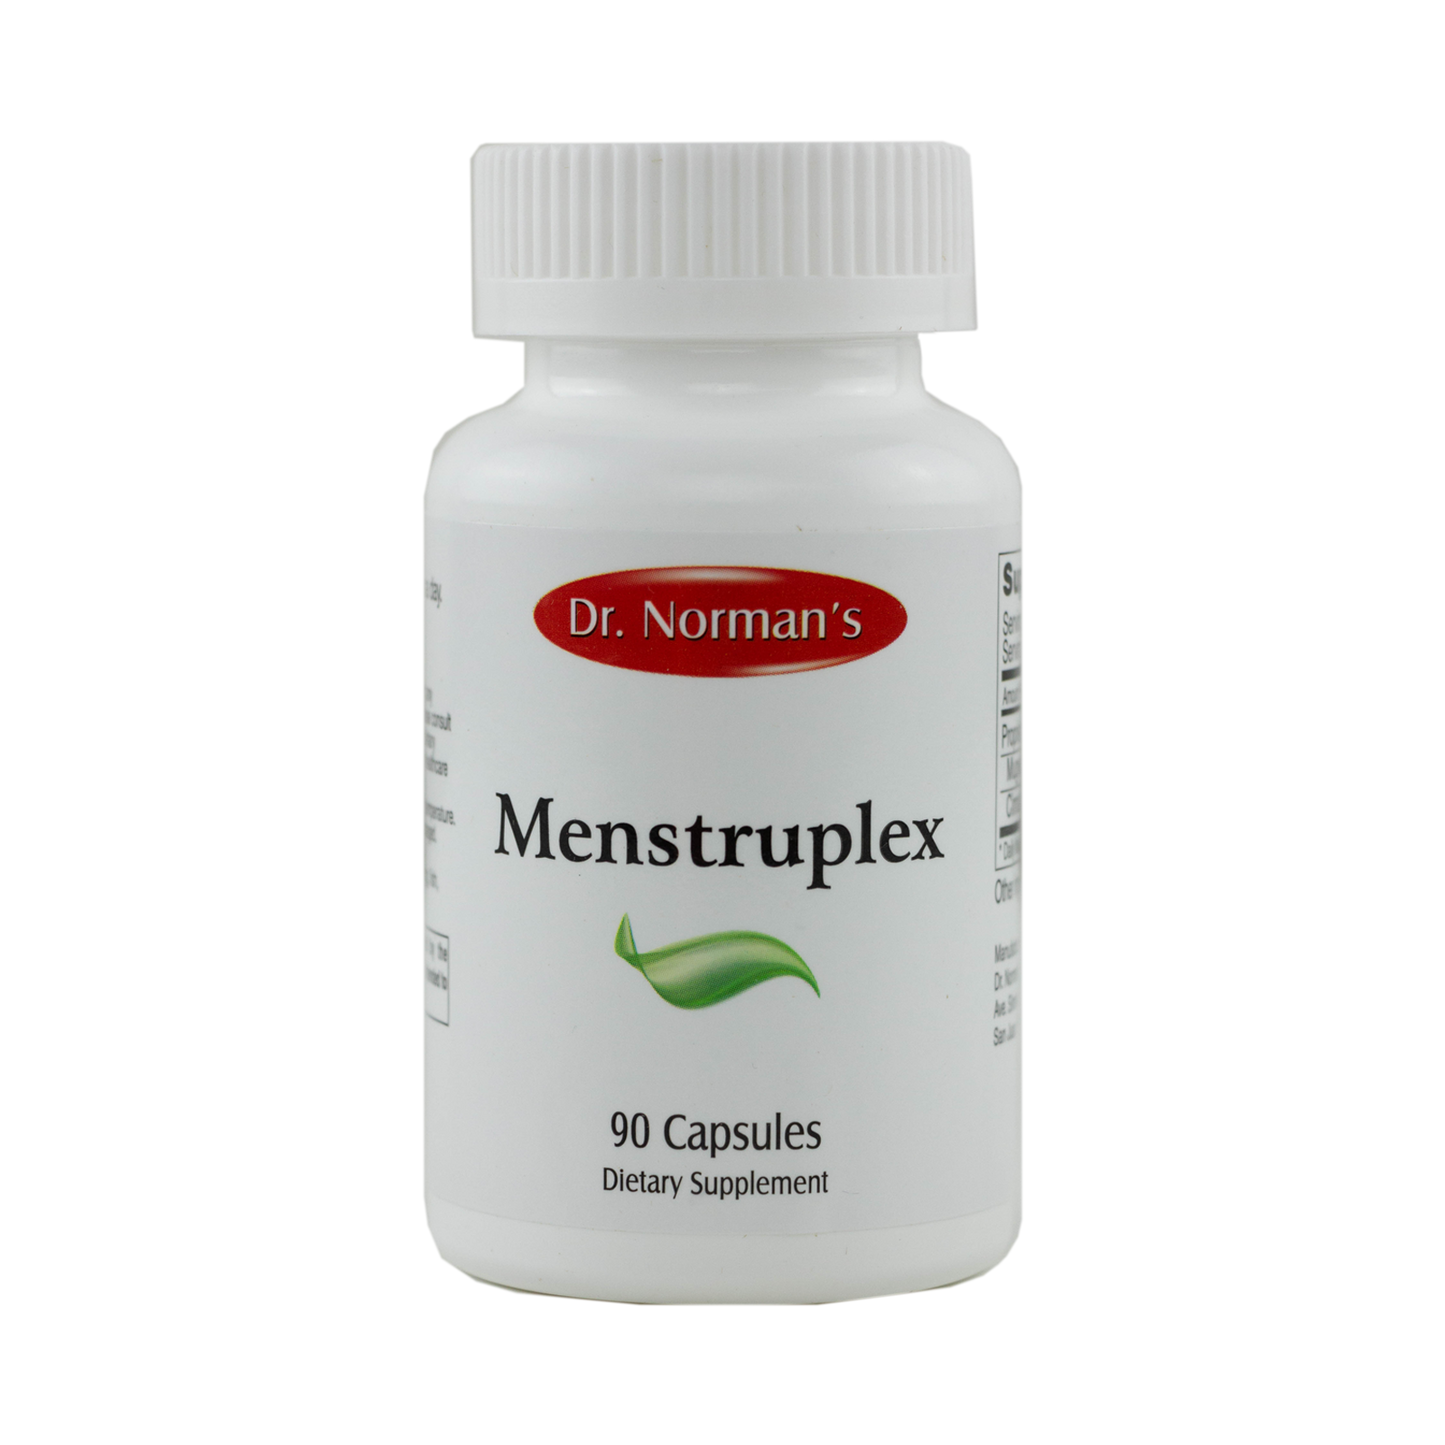 Dr. Norman's Menstruplex